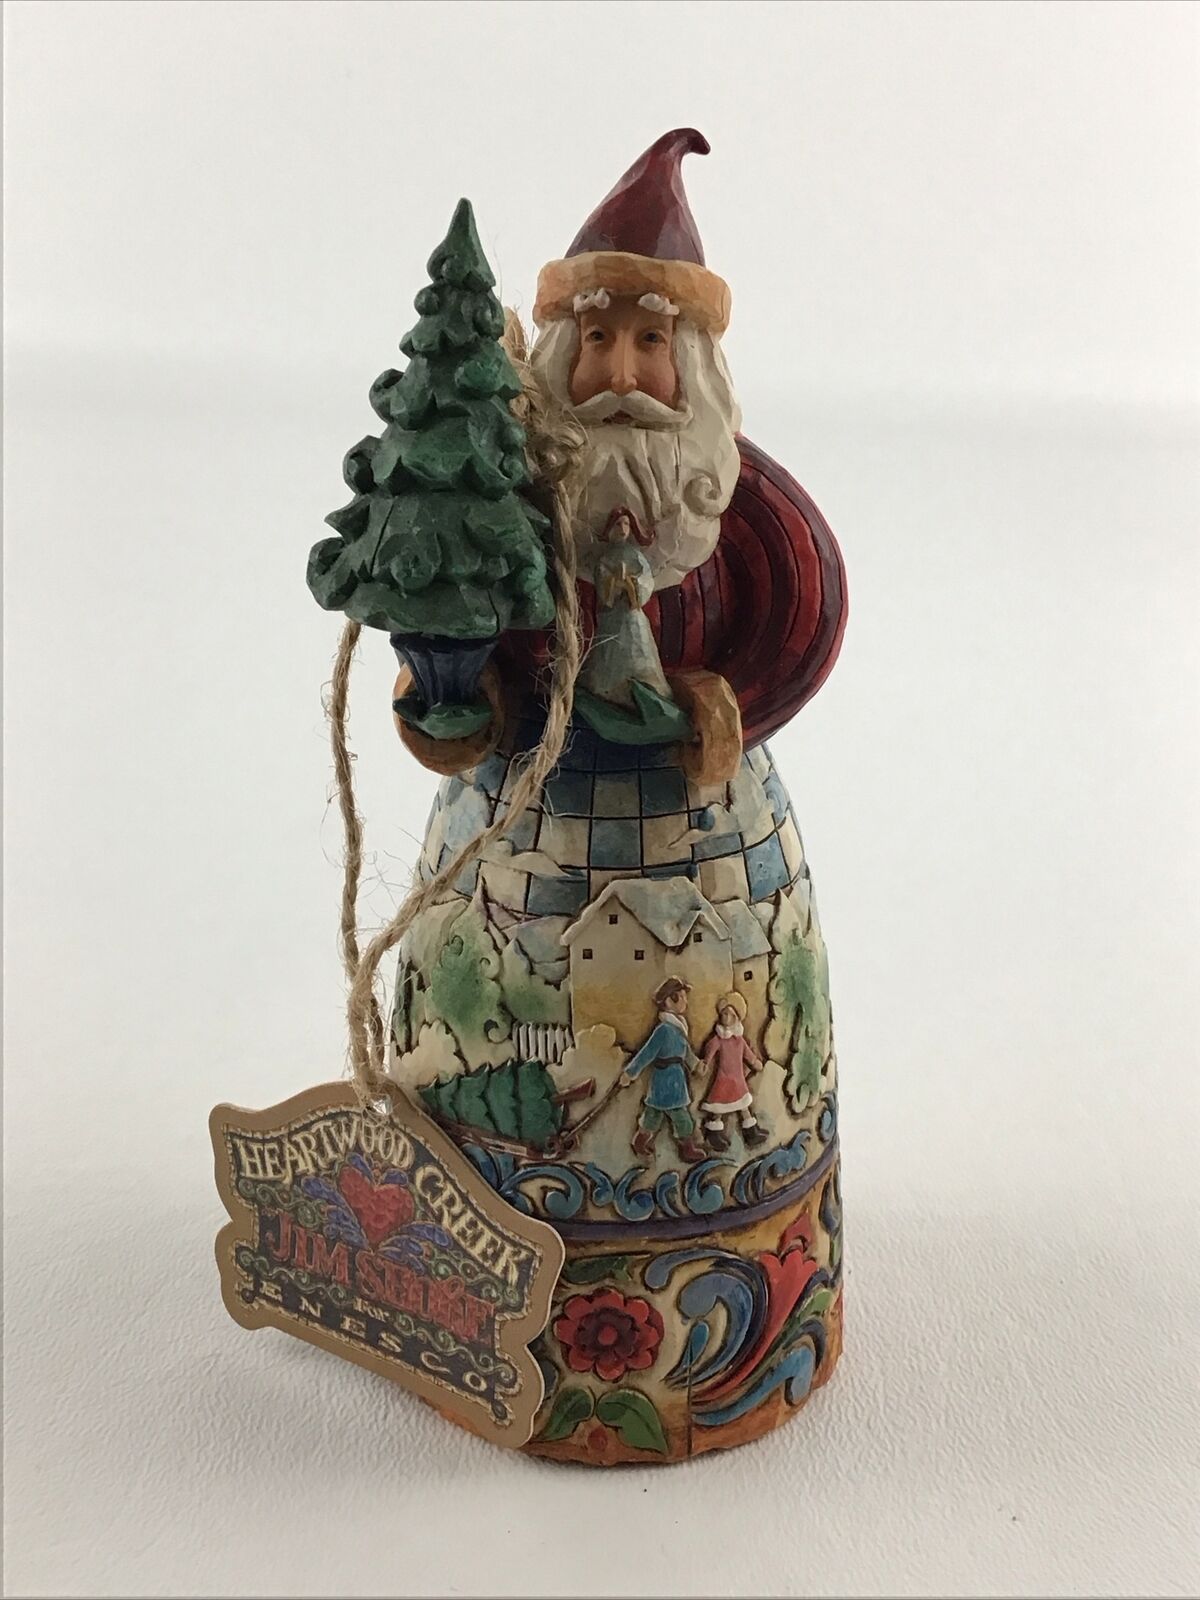 Jim Shore Santa “Simple Gifts” 4008993 Figure 2007 Figurine Painted Scene Tree